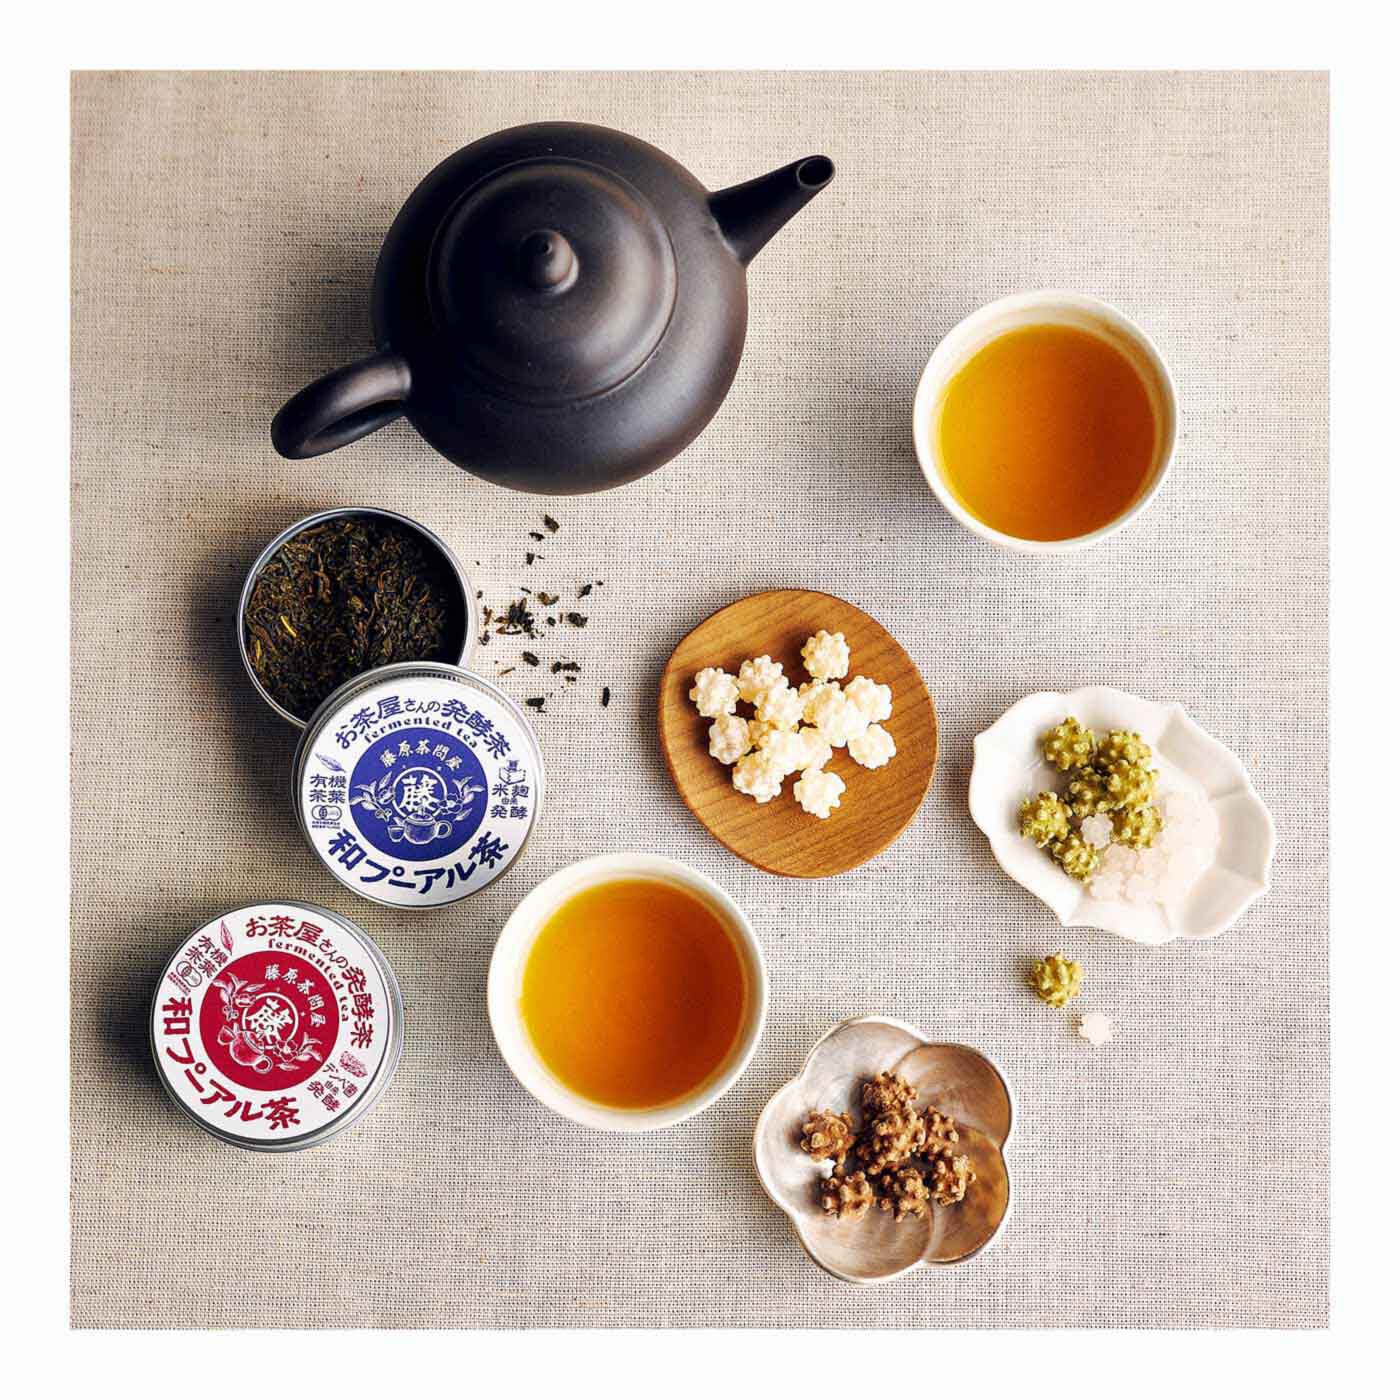 純農|純農 からだにしみ渡るおいしさ 島根の茶師が5種の由来で醸した 有機 和プーアル茶の会（10回予約）|ギフトにもピッタリなちいさなかわいい缶入り♪